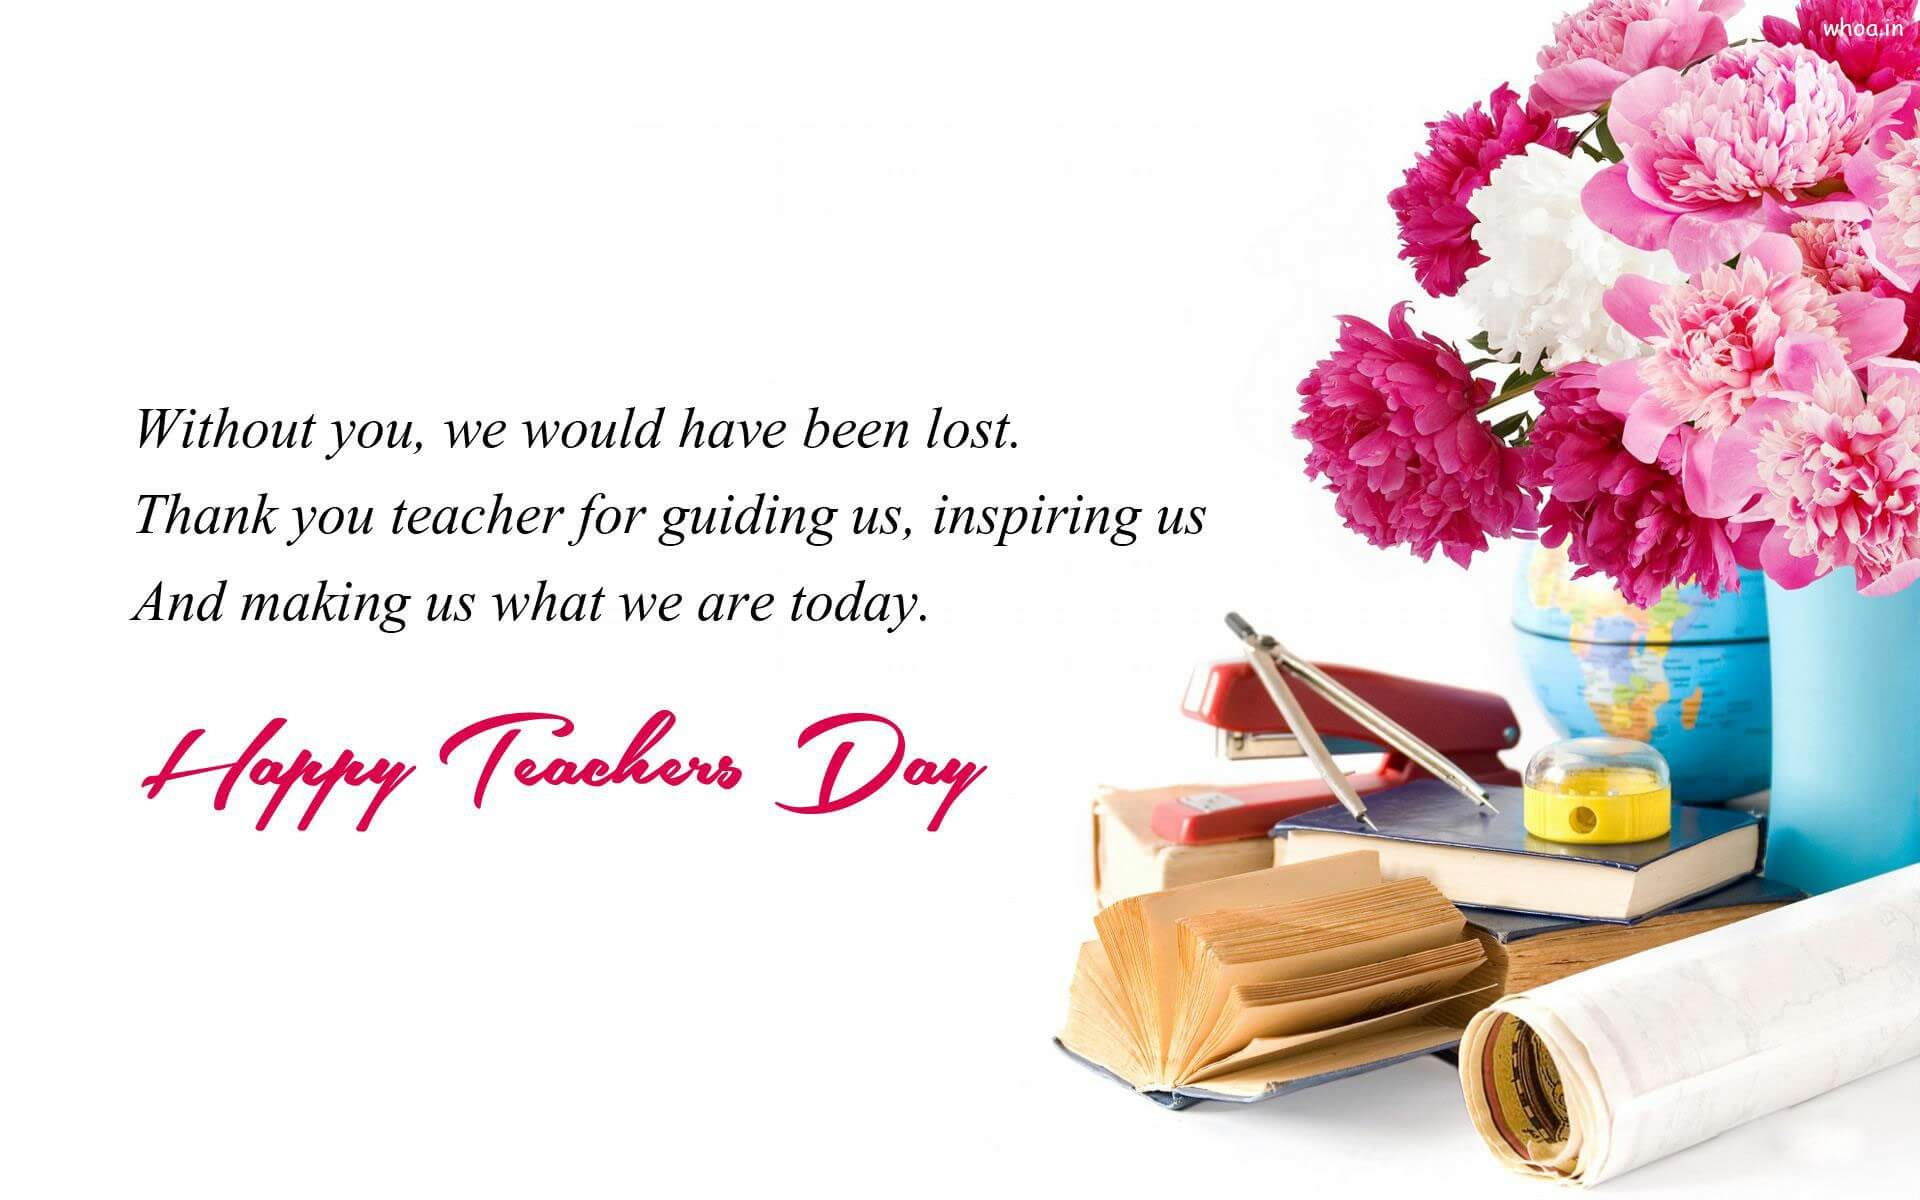 World Teacher's Day 2017. Happy Days 365